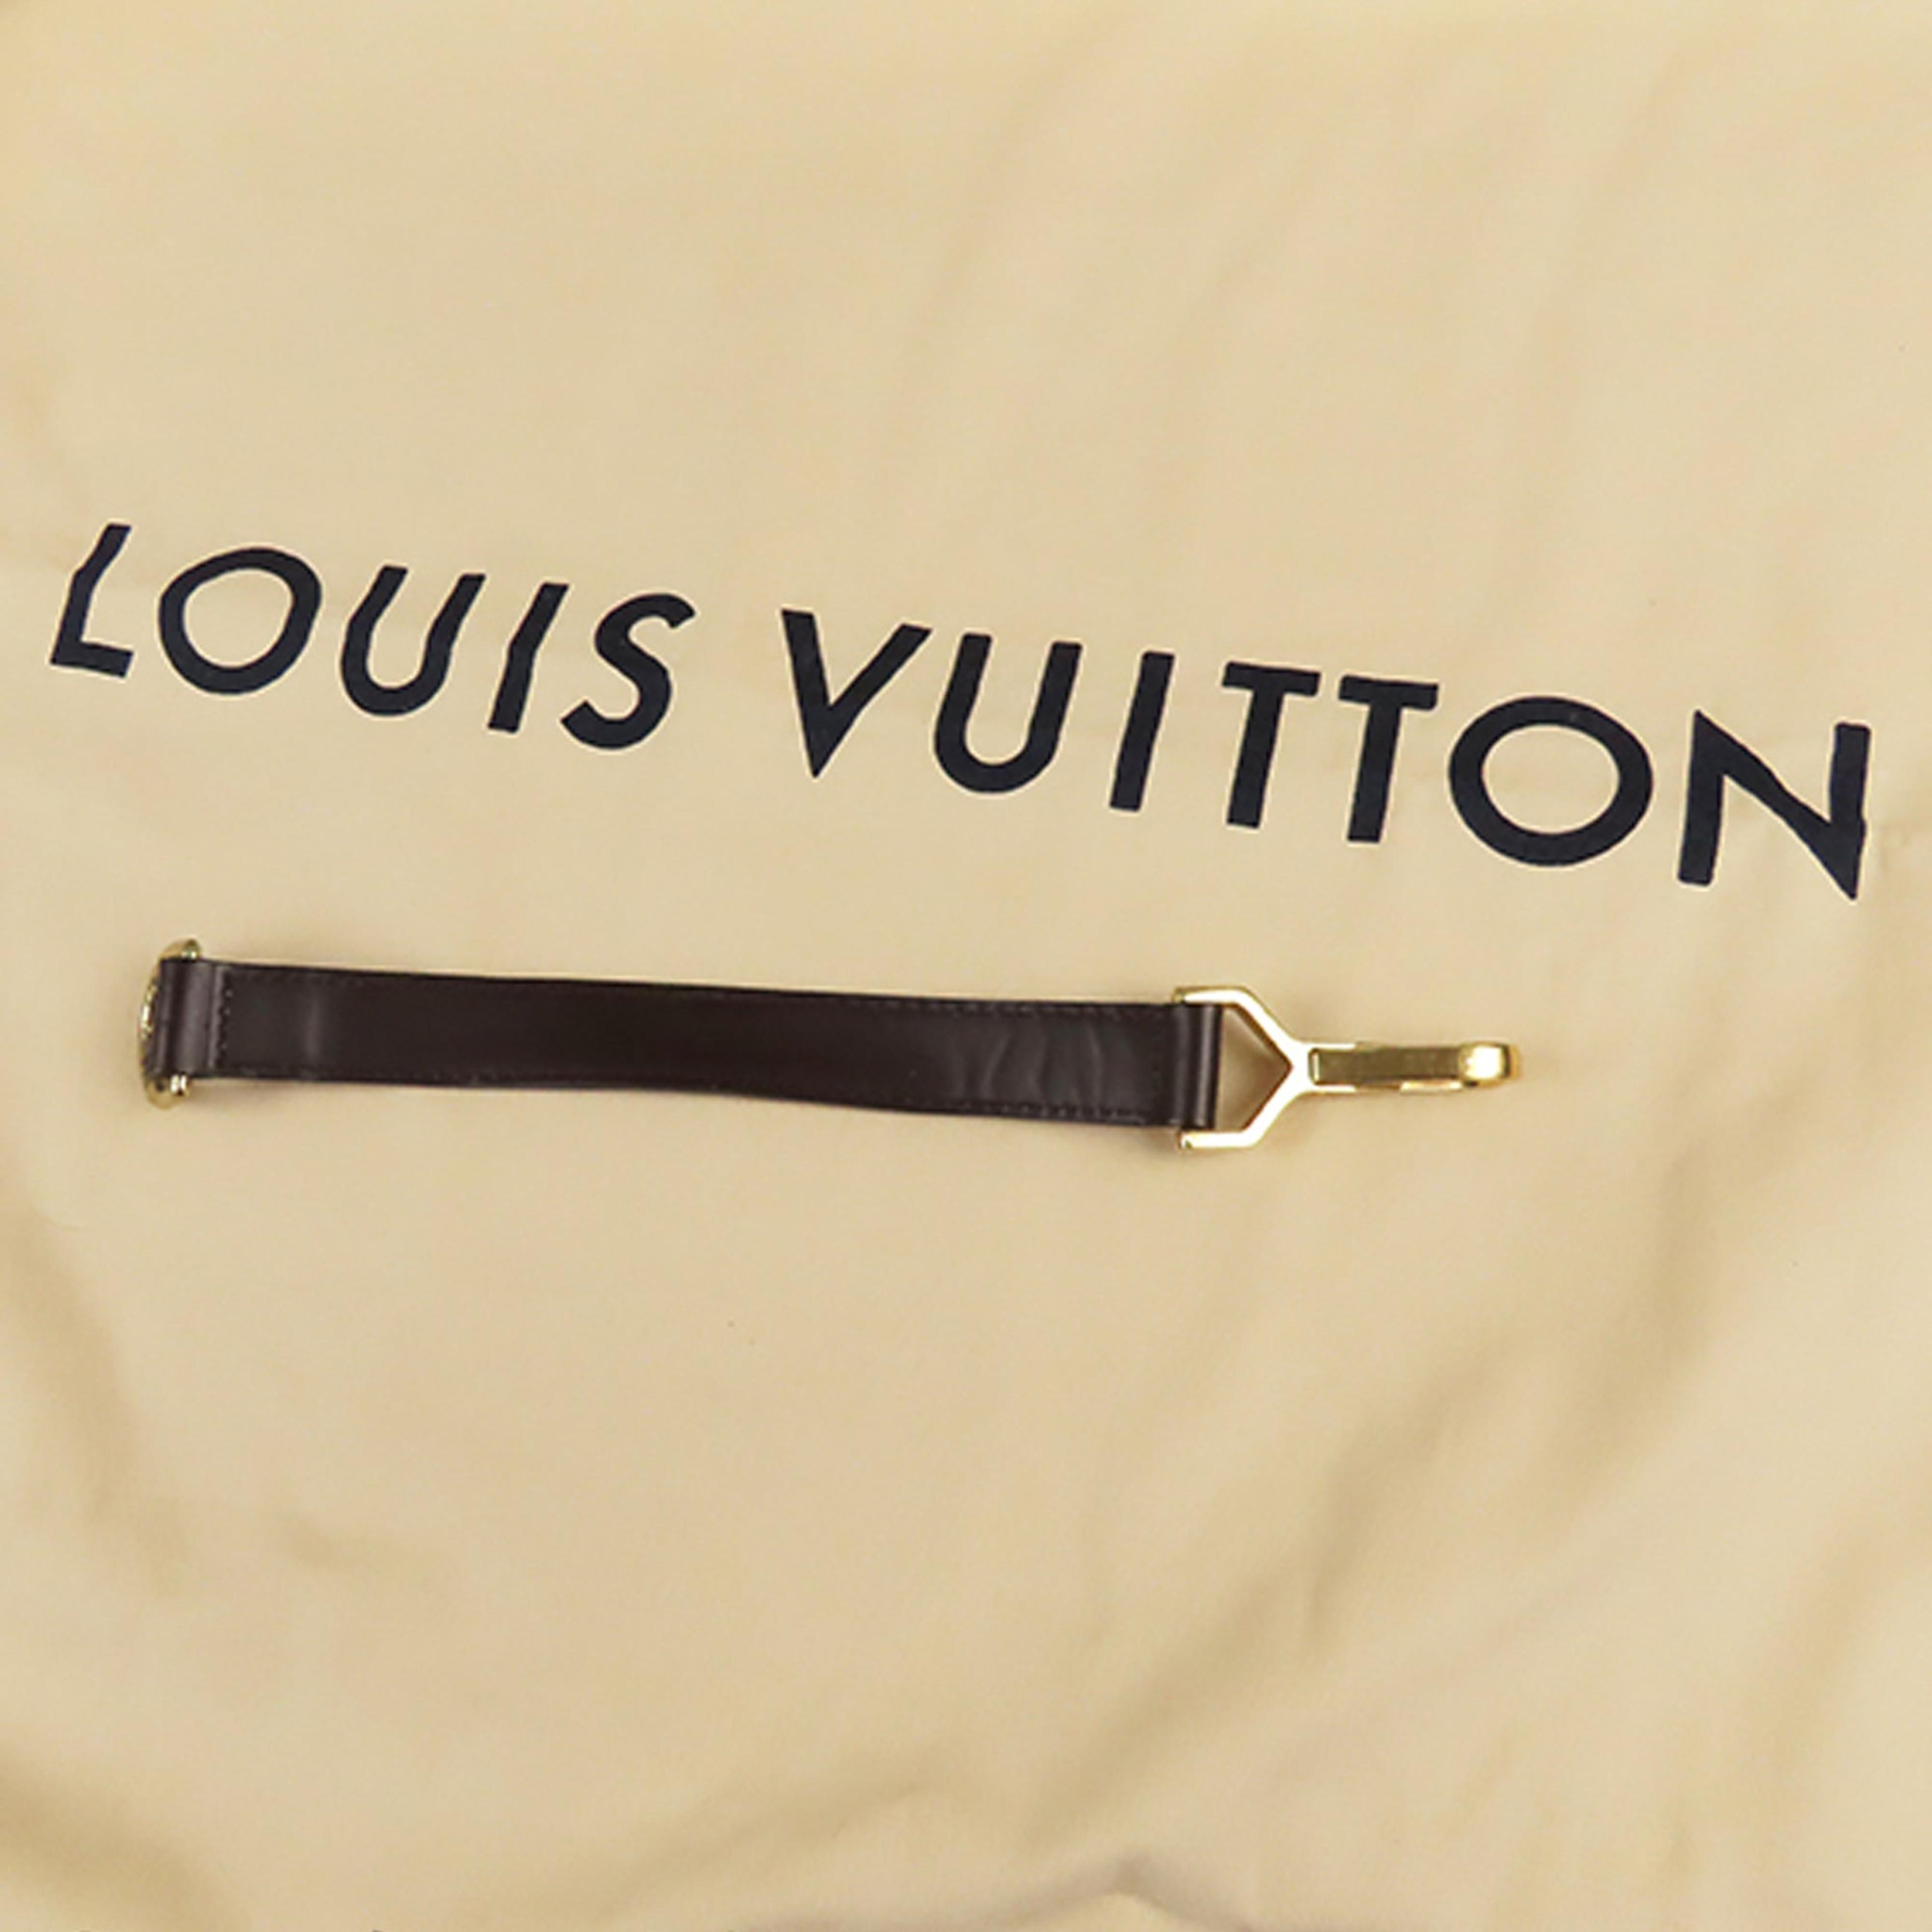 Louis Vuitton Classic Monogram Canvas Pegase 70 Suitcase Bag. Very